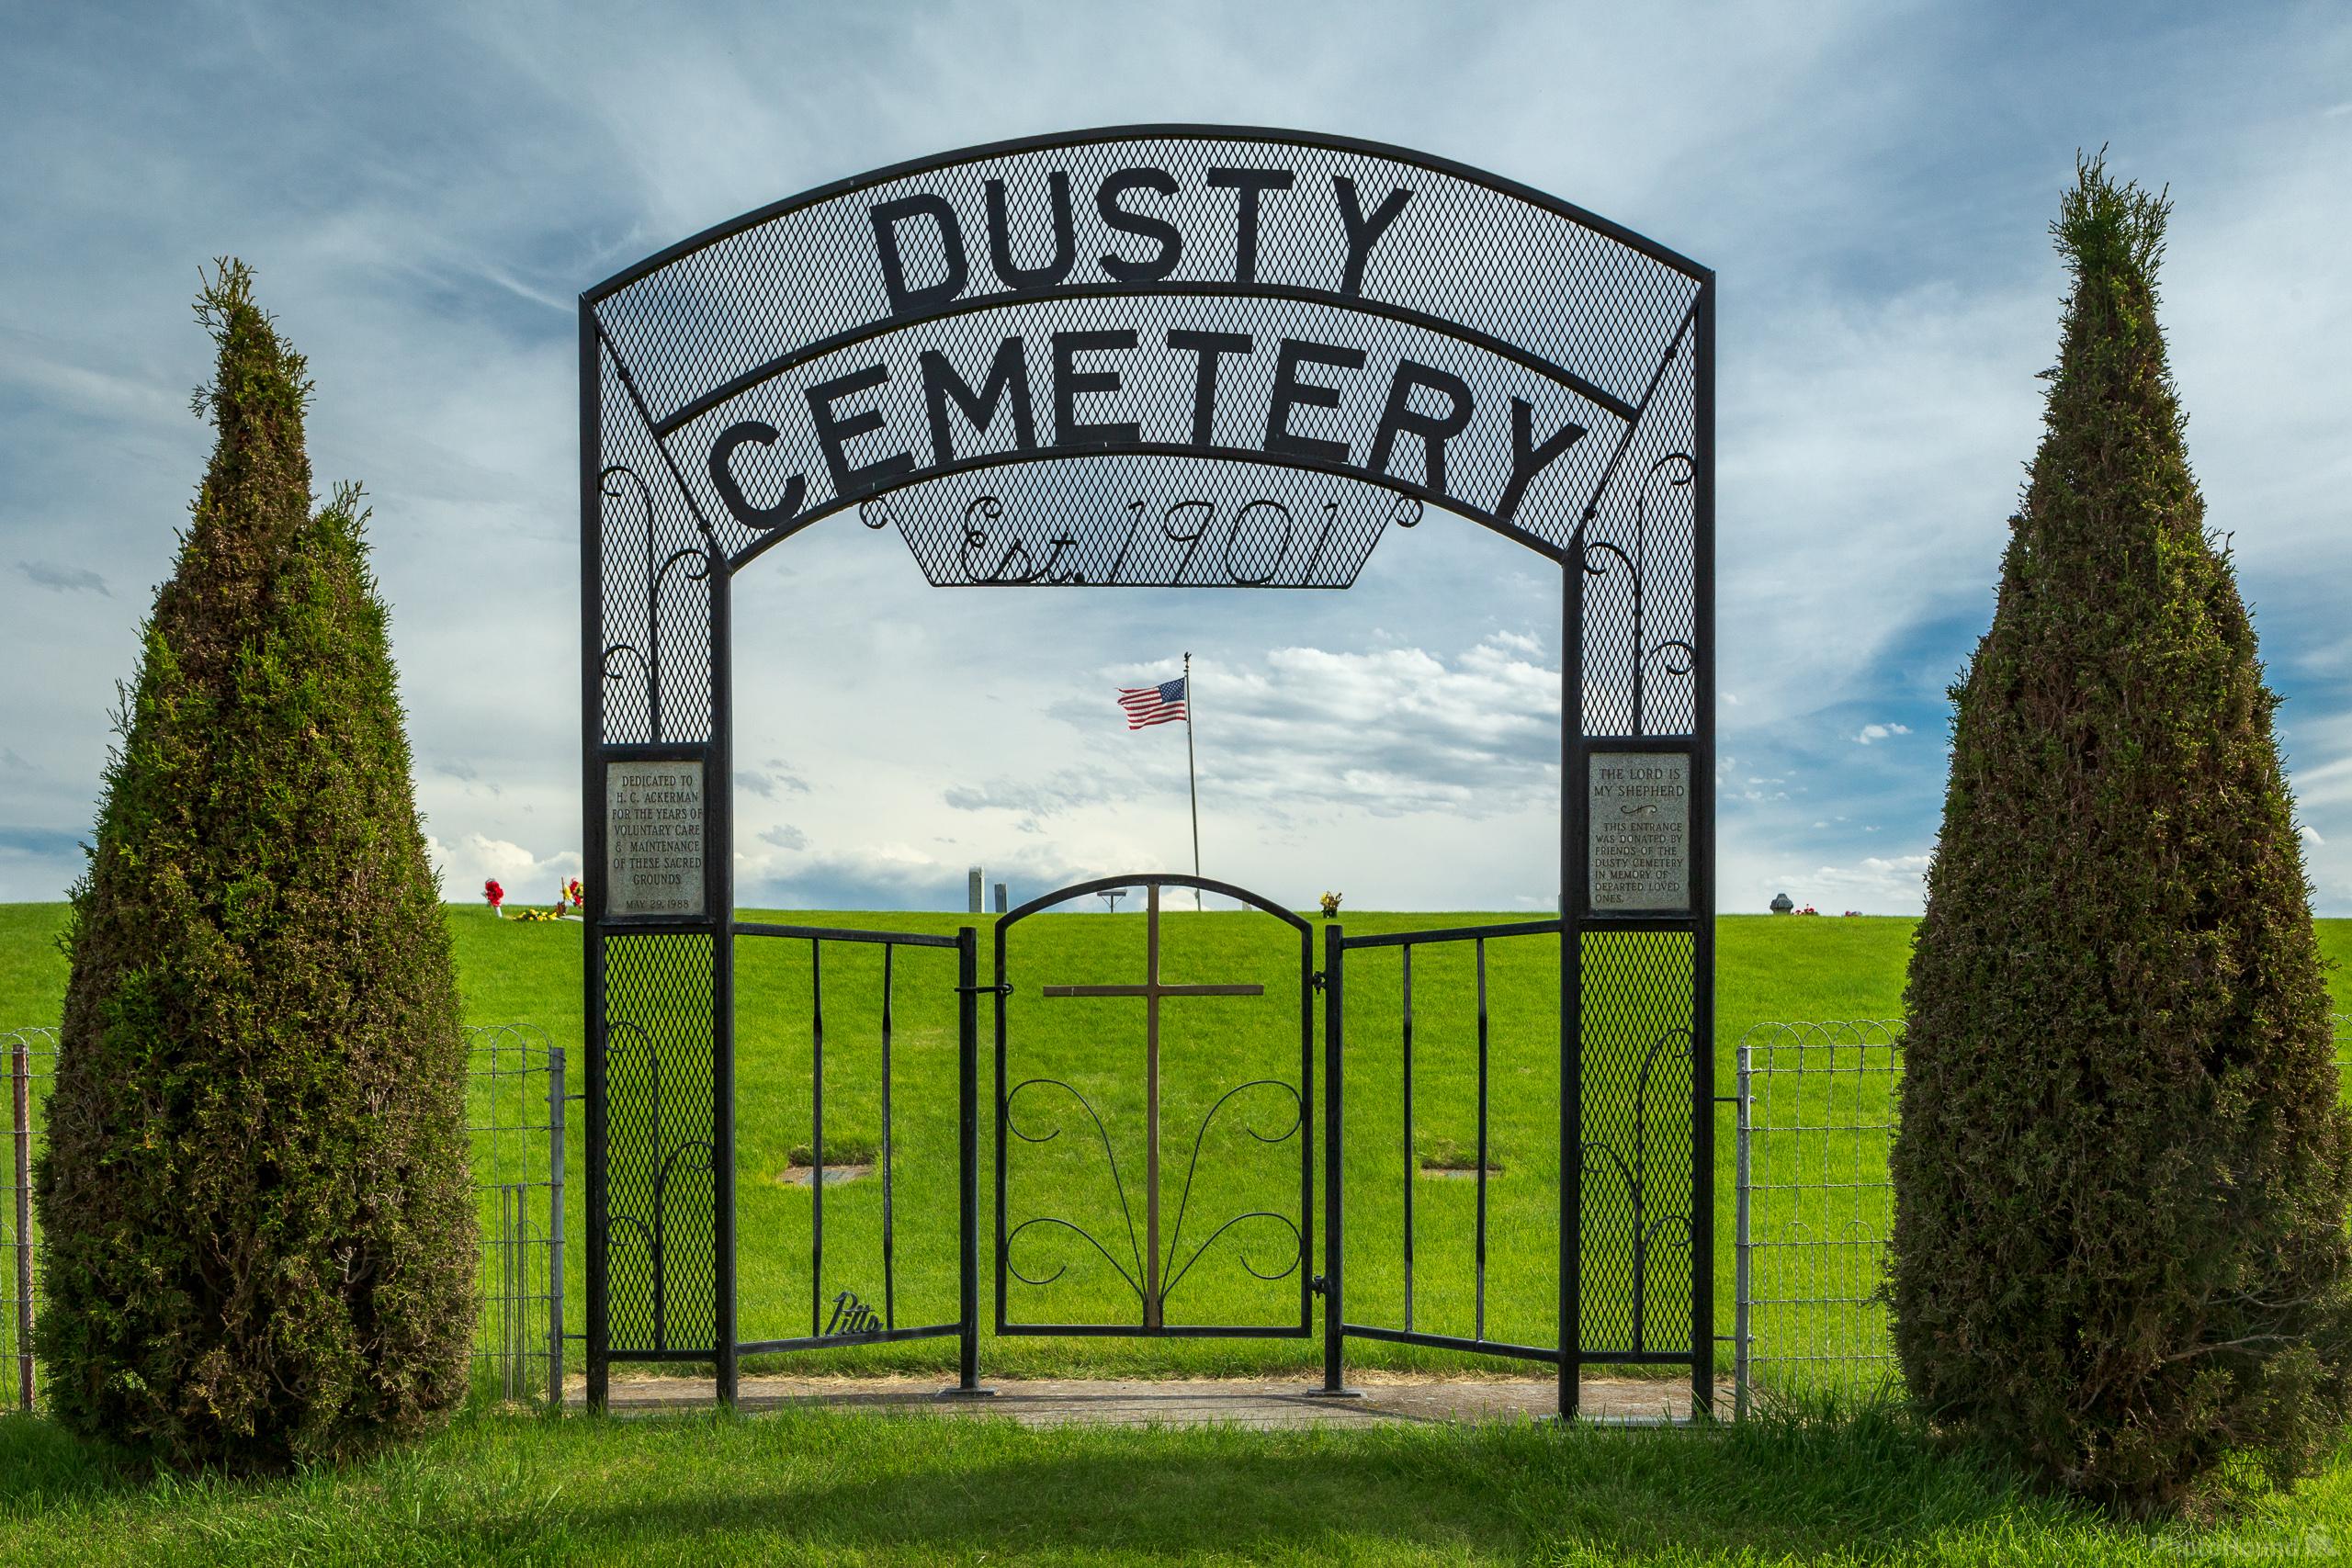 Image of Dusty Cemetery by Joe Becker